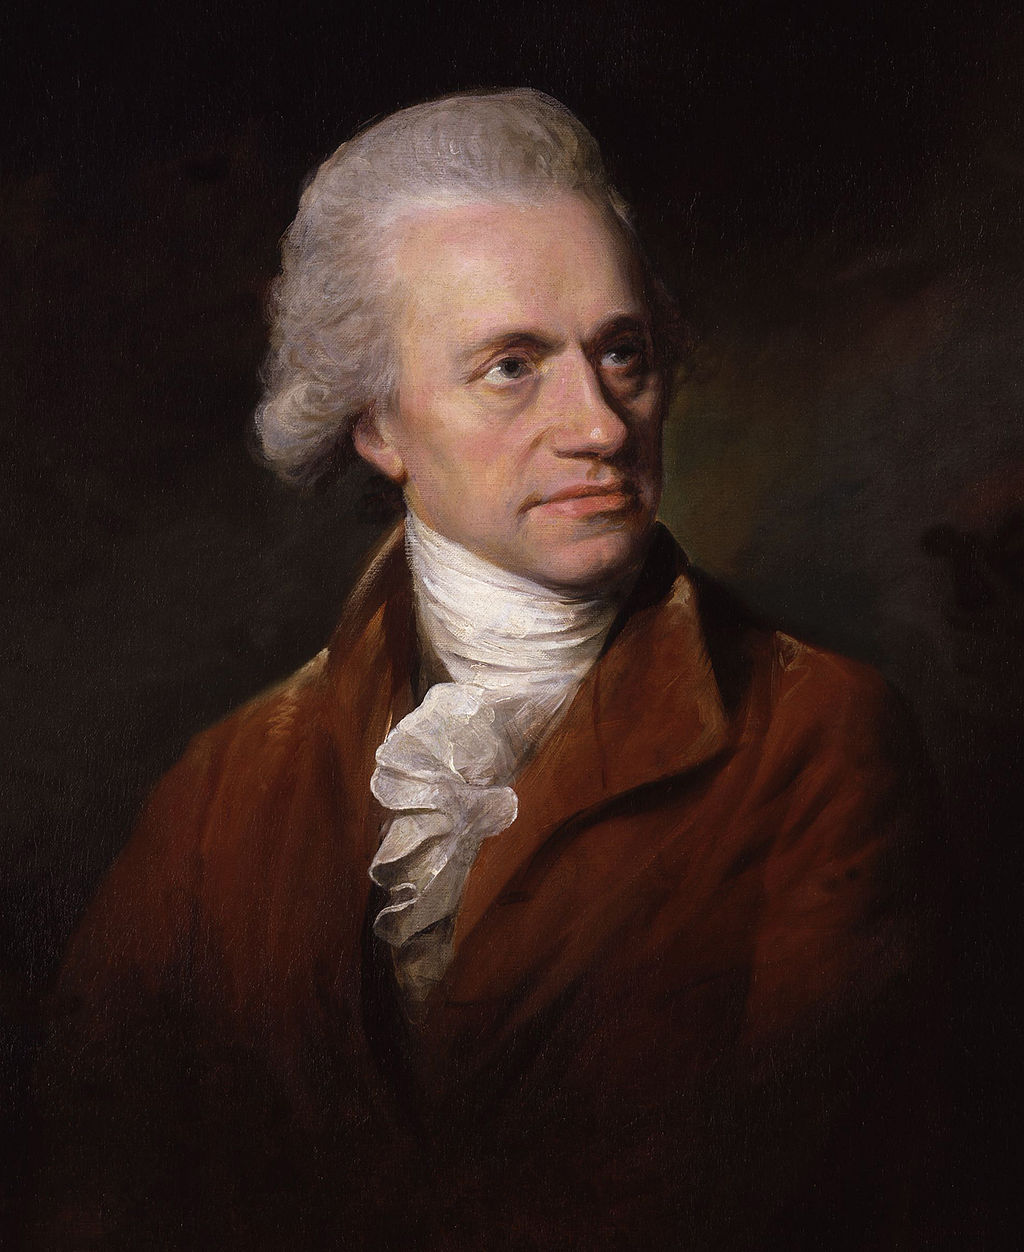 William Herschel, 1785 portrait by Lemuel Francis Abbott